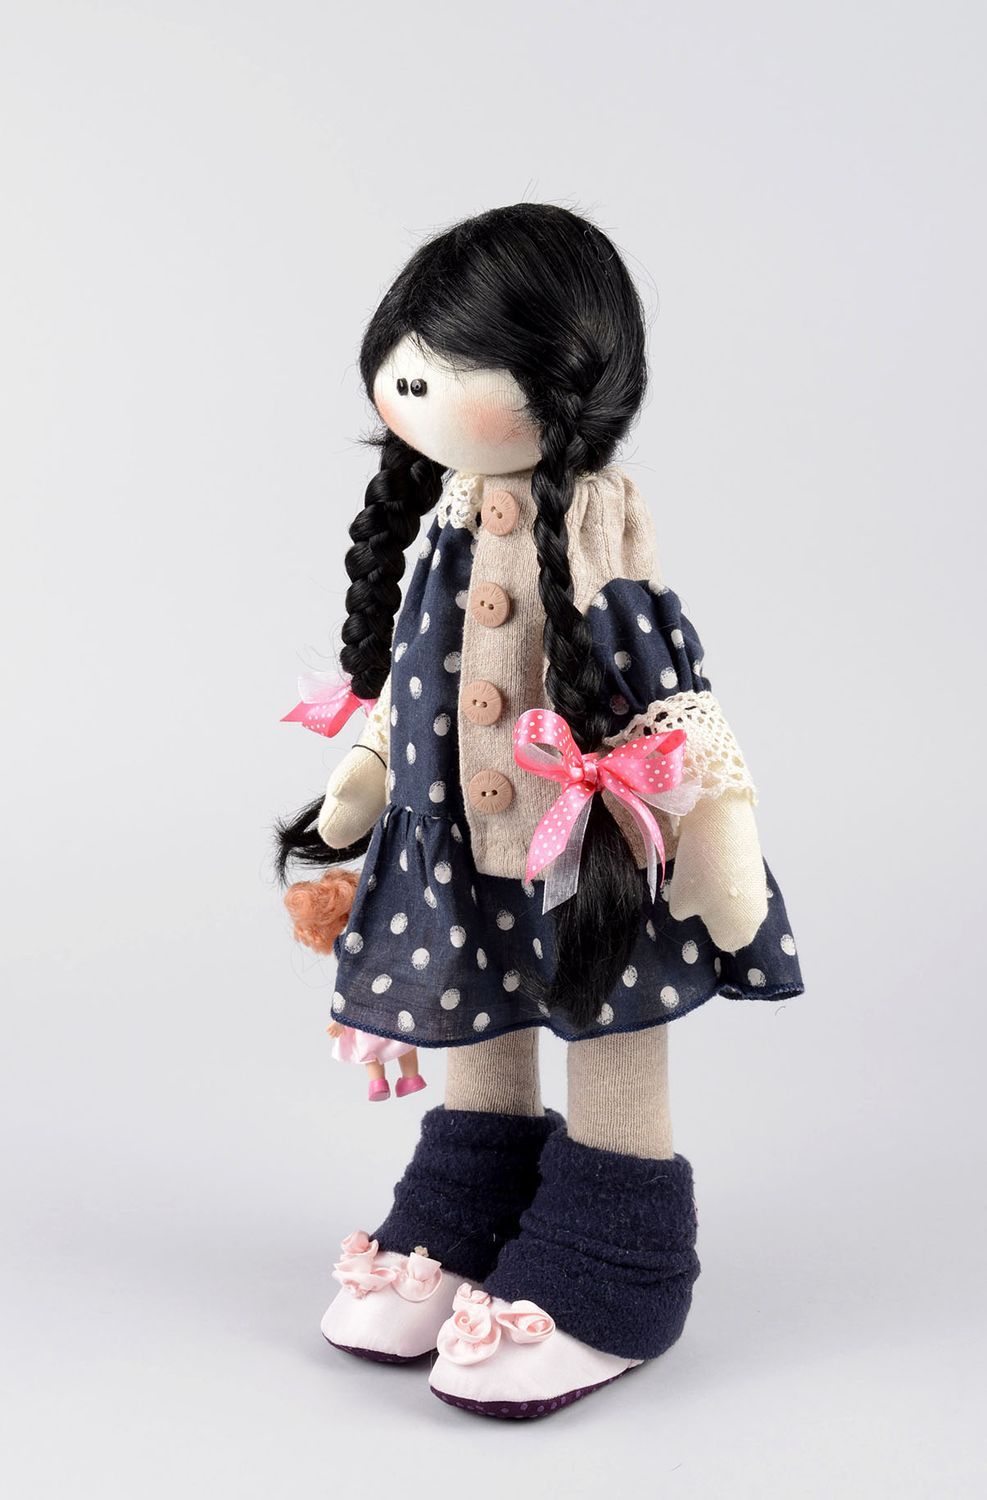 Handmade soft doll girl doll toys for kids nursery decor gifts for children photo 3